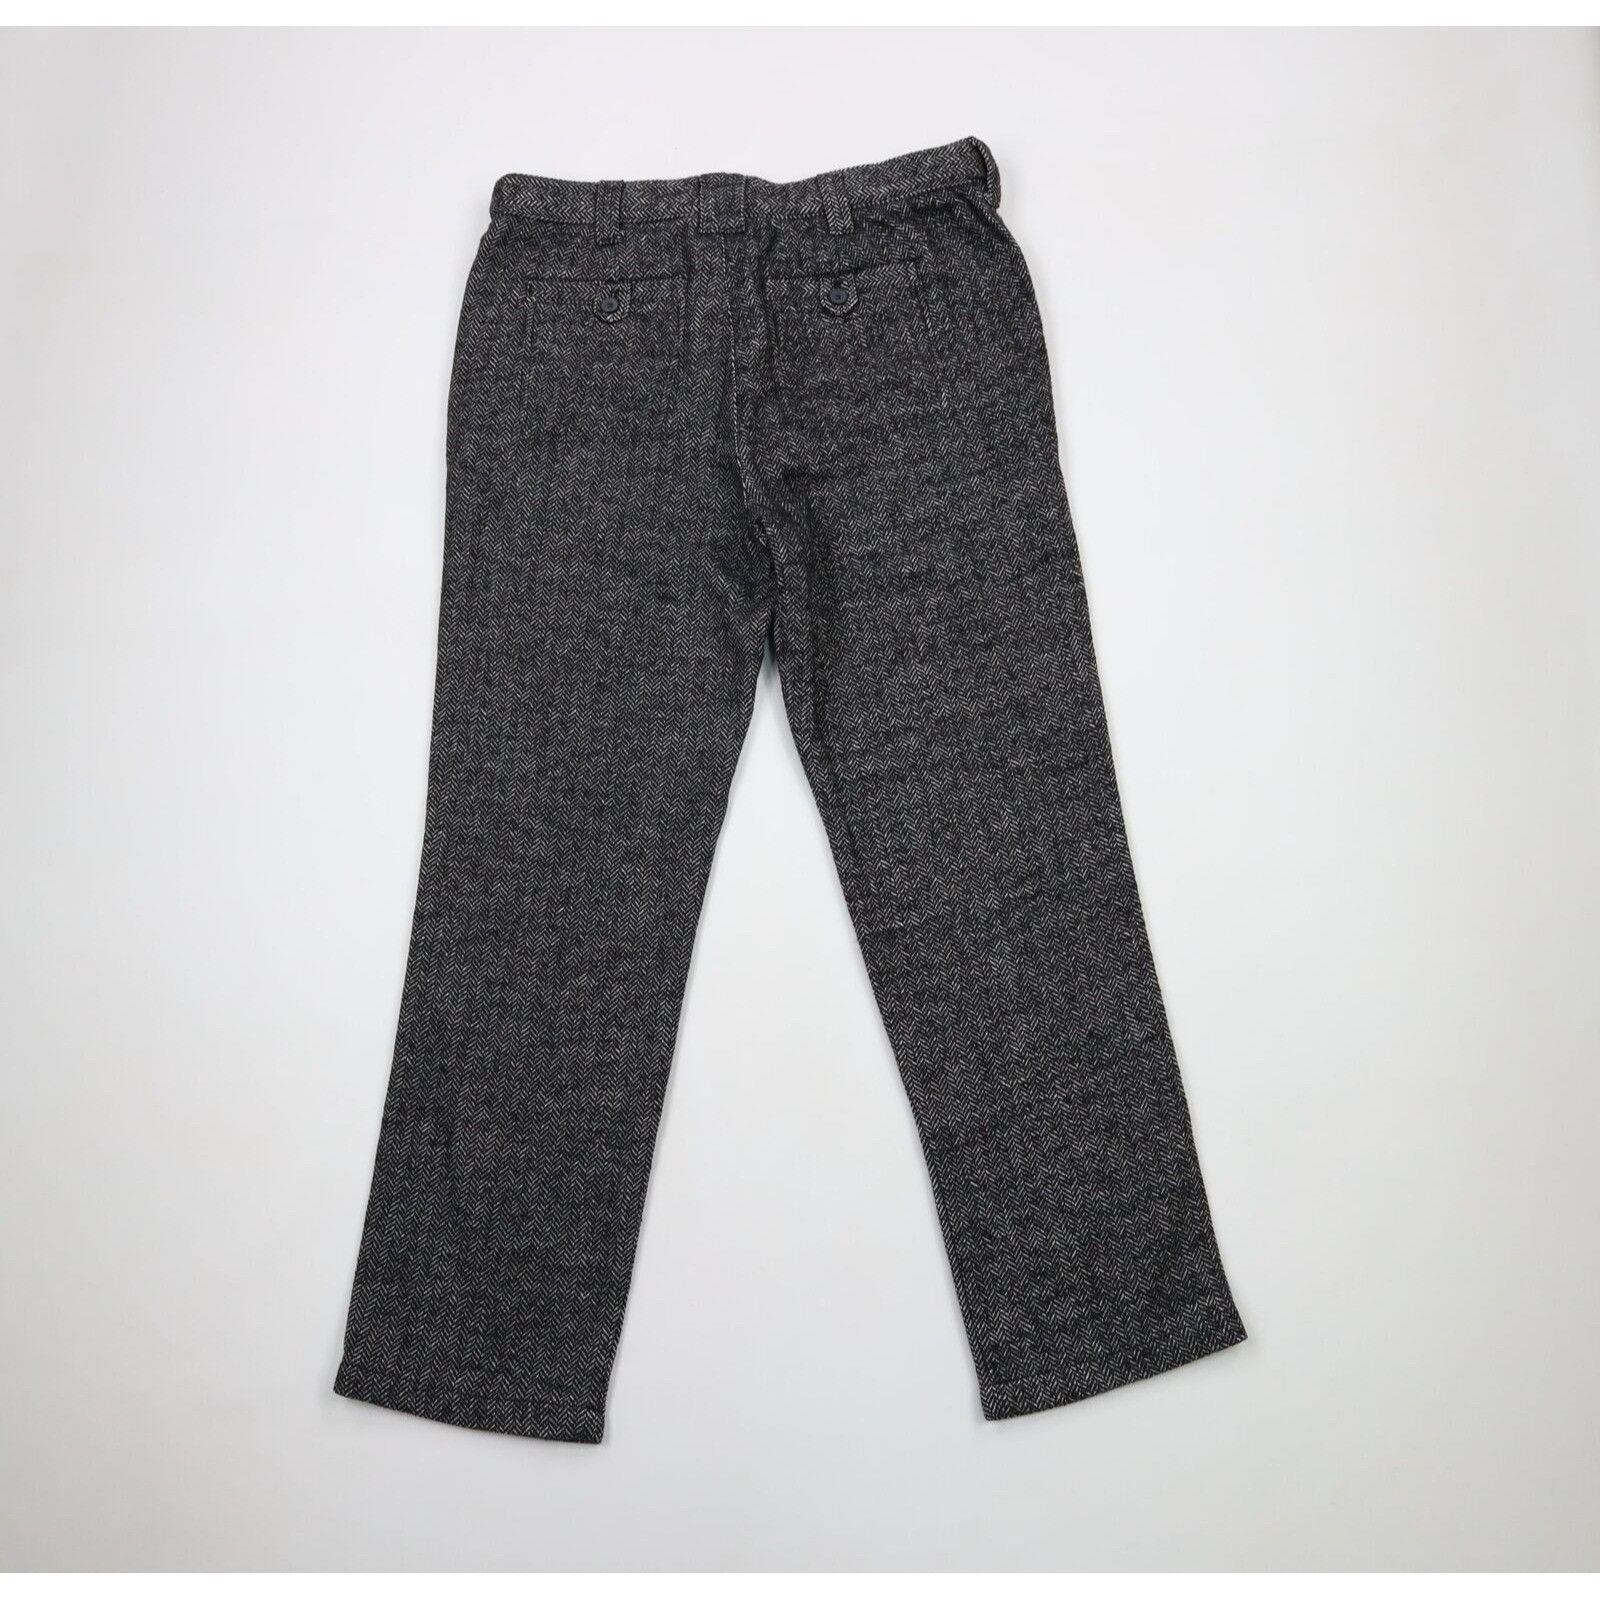 Vintage Vintage 90s Streetwear Tweed Herringbone Chino Pants Size US 34 / EU 50 - 6 Thumbnail